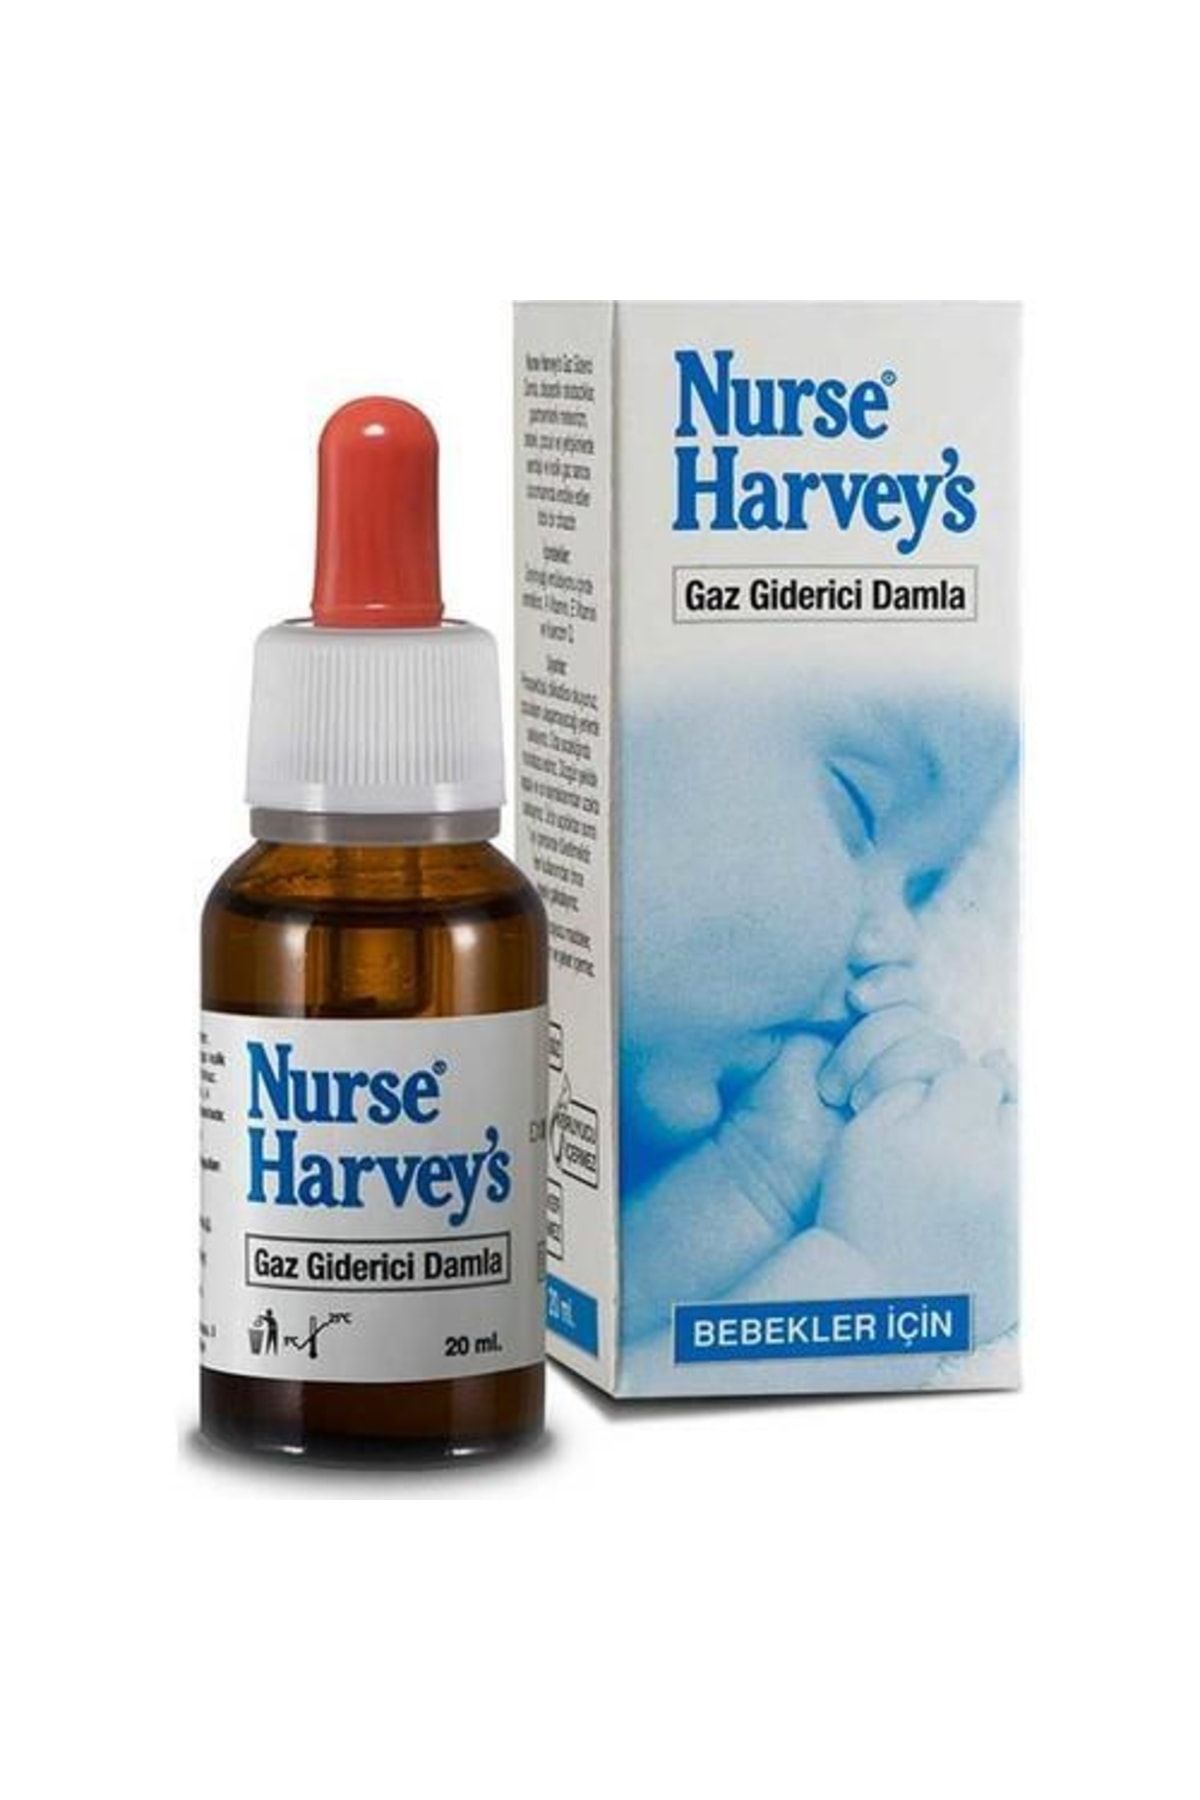 Nurse Harvey's Bebekler İçin Gaz Giderici Damla 20 ml